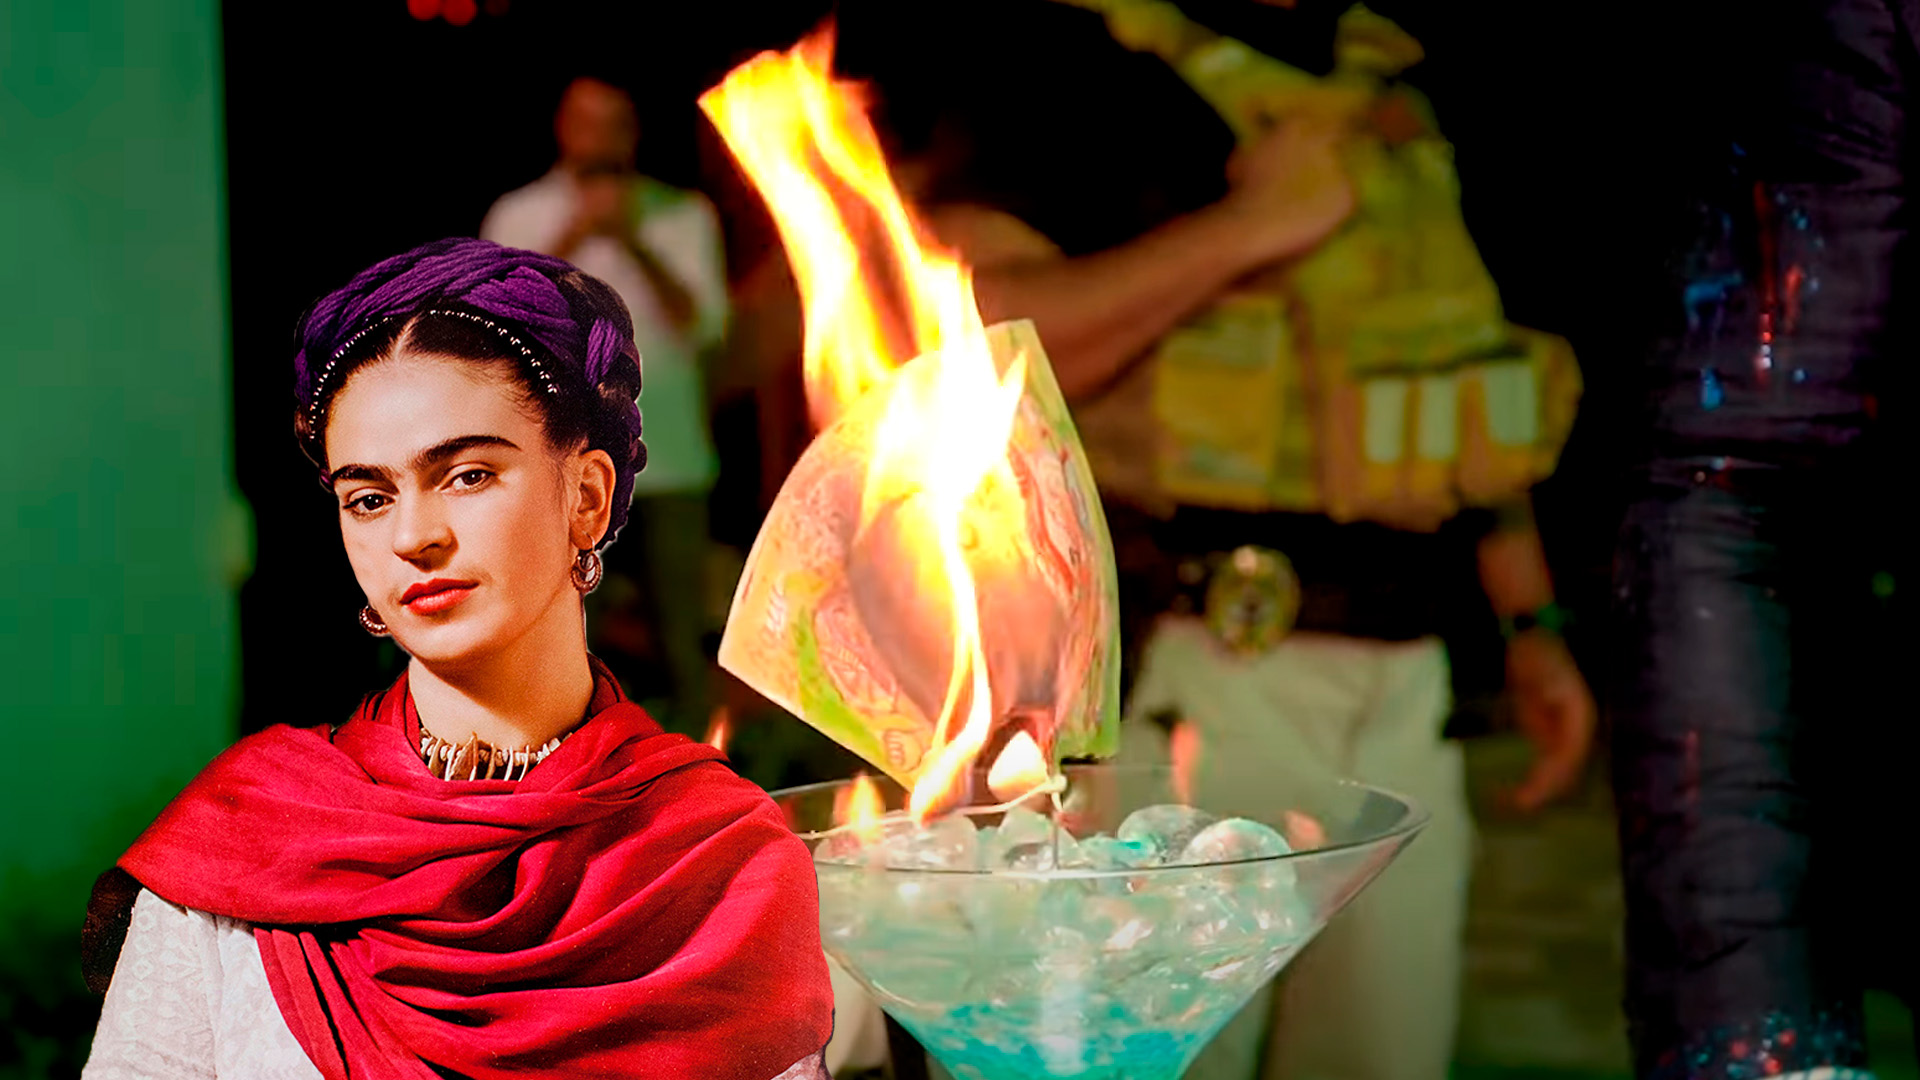 Quemaron obra de Frida Kahlo valuada en millones de dólares para venderla en NFT